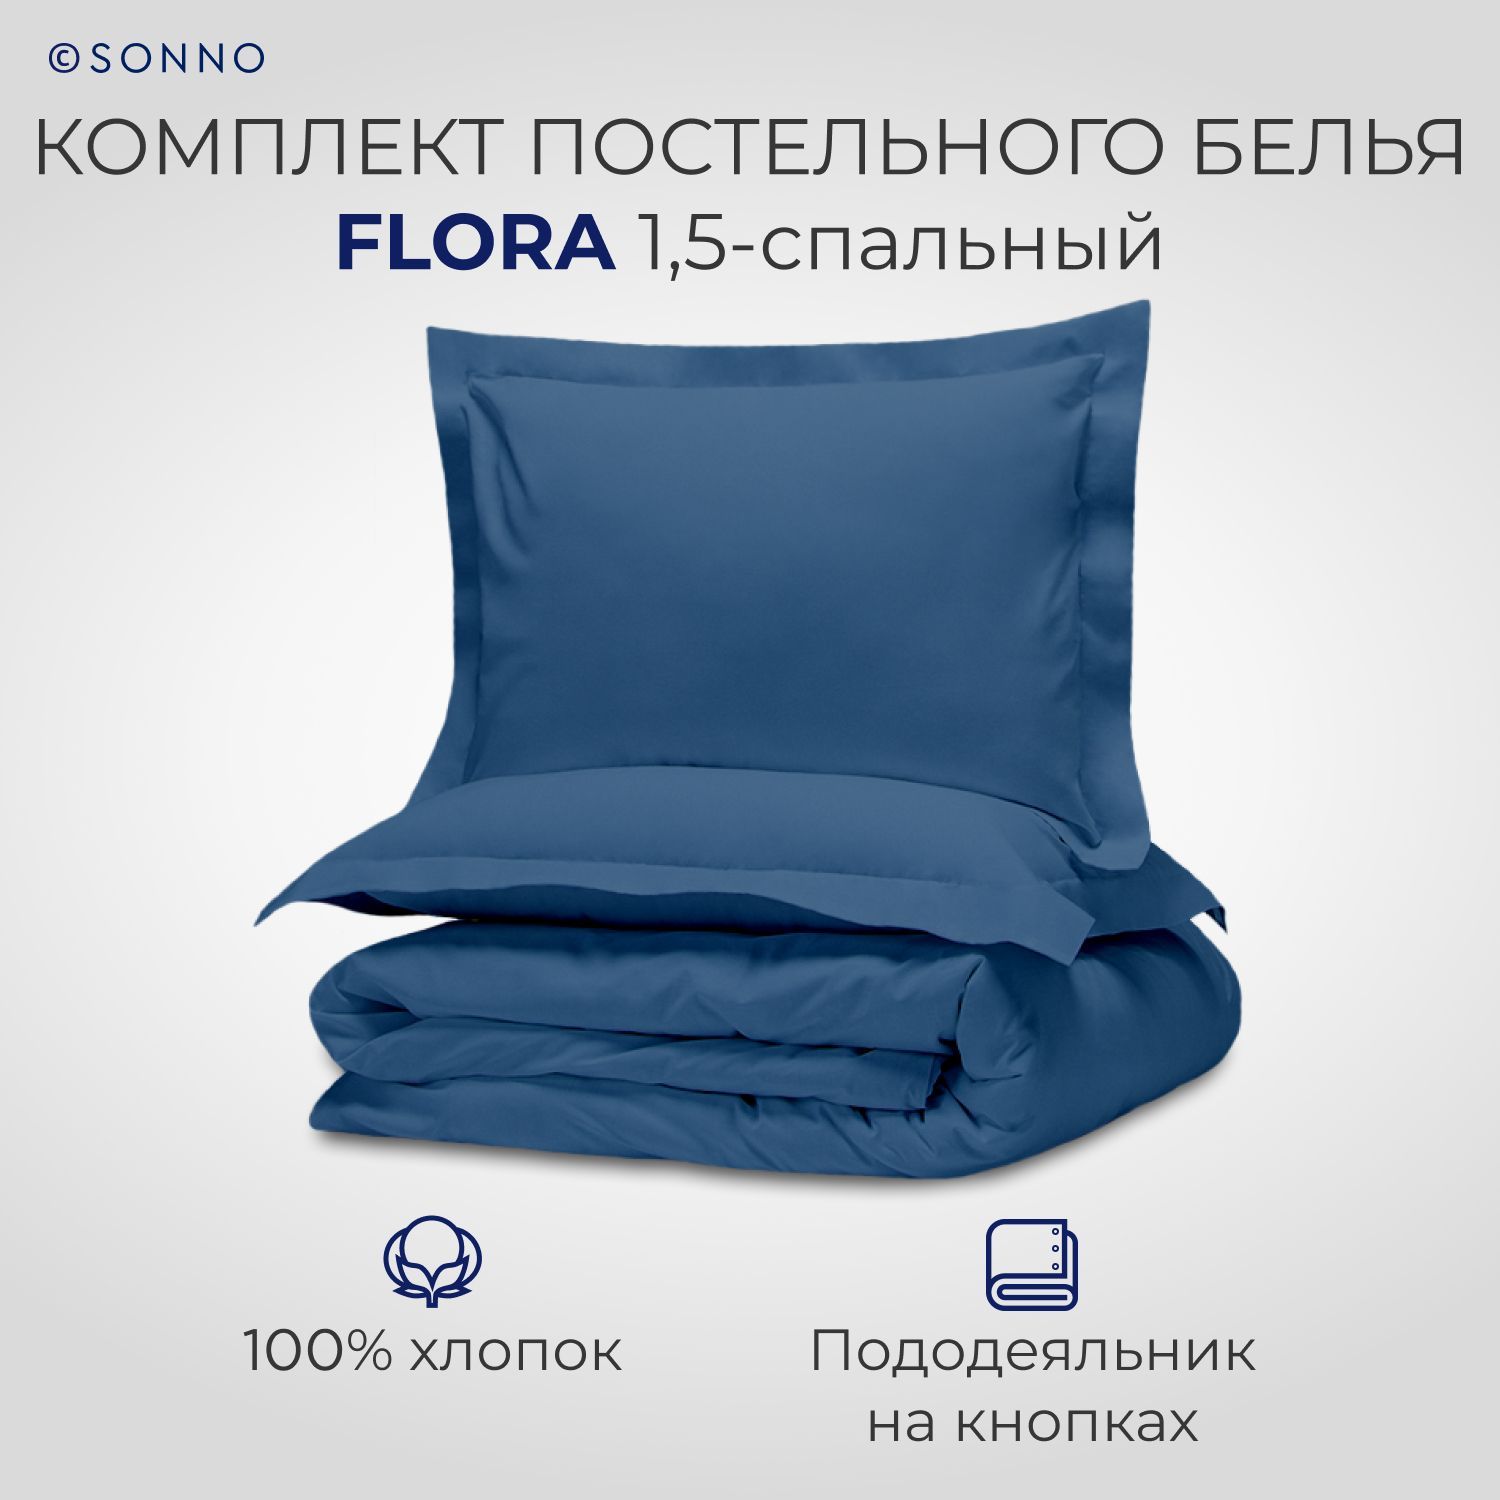 Комплект постельного белья SONNO FLORA 1,5-спальный цвет Глубокий синий